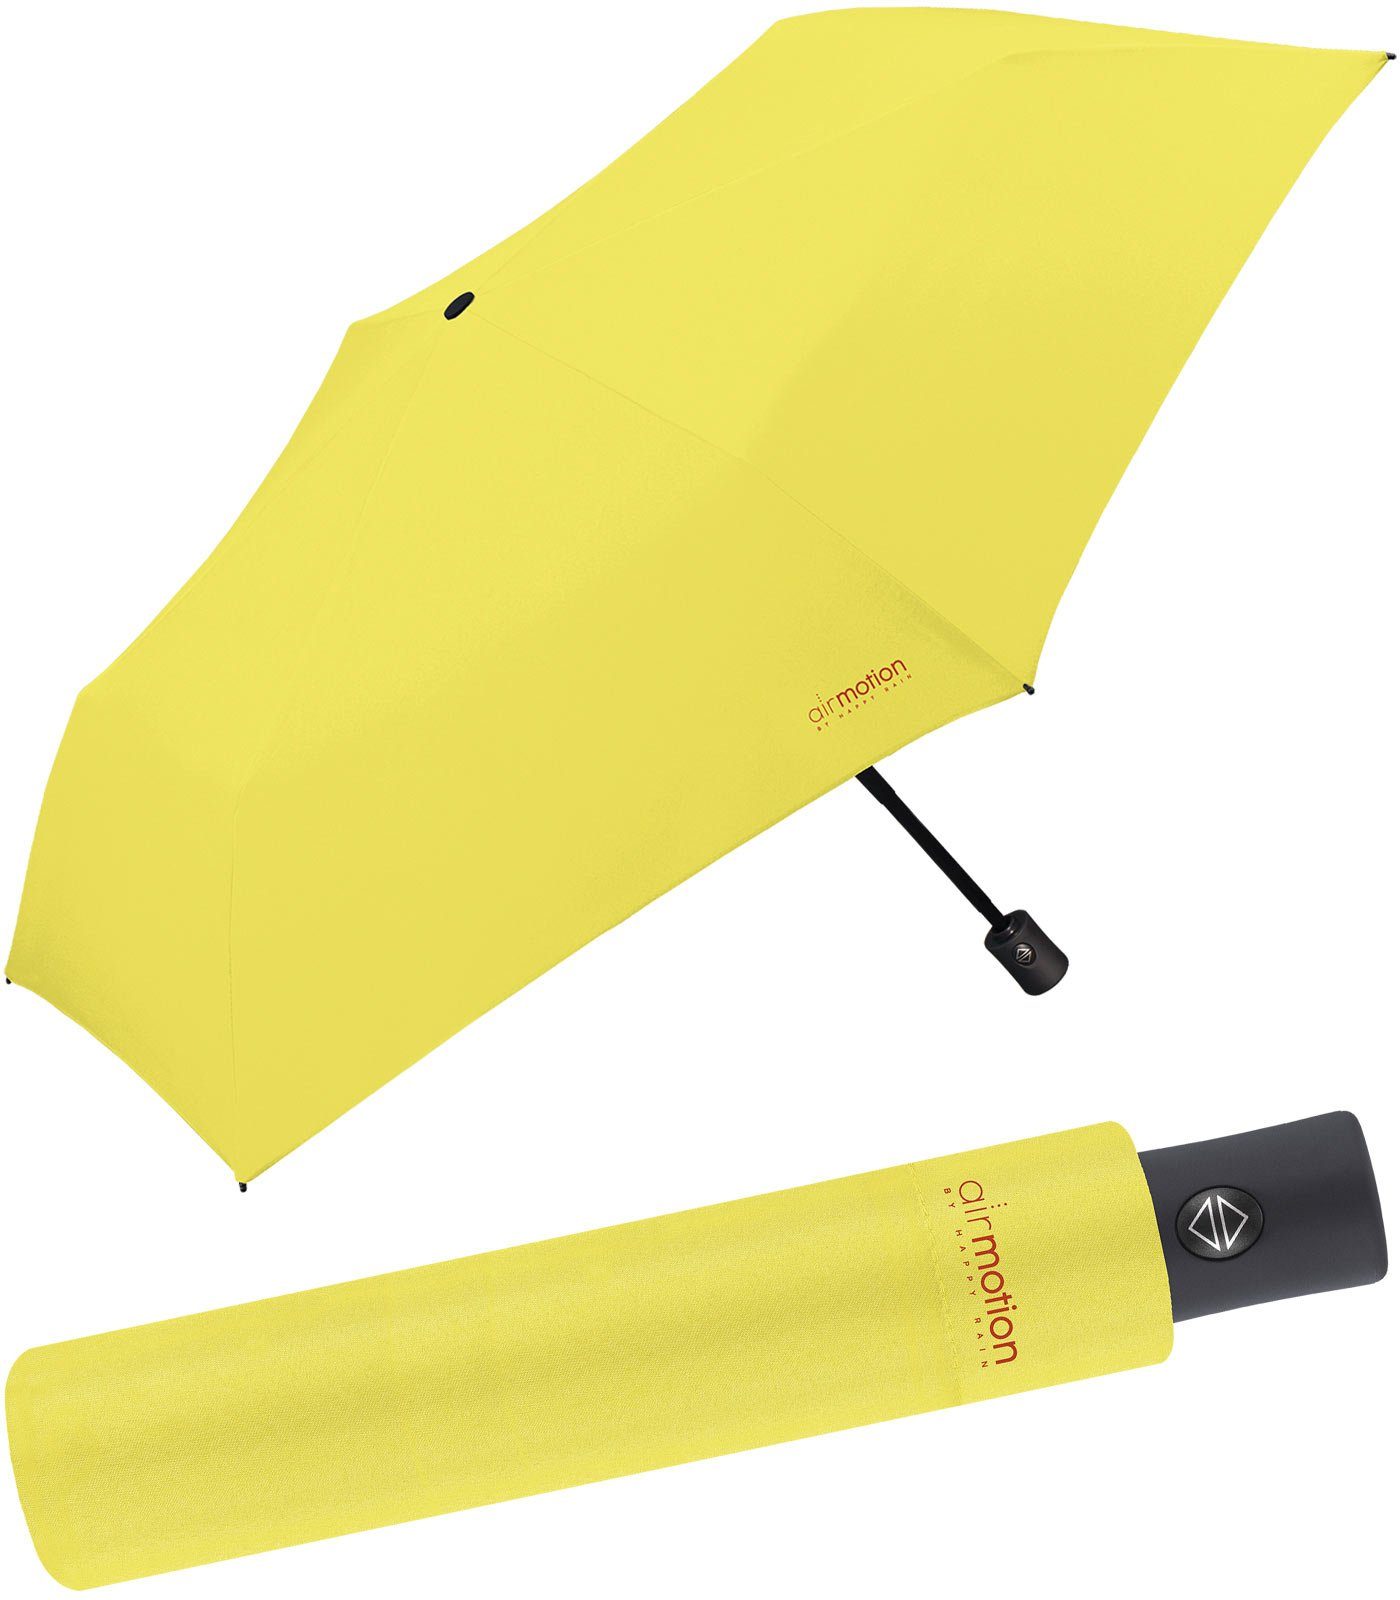 Taschenregenschirm - Air leichtester perfekt für HAPPY 174 RAIN Gepäck Handtasche superleicht, g - und Motion Auf-Zu-Automatik Minischirm vollautomatischer gelb